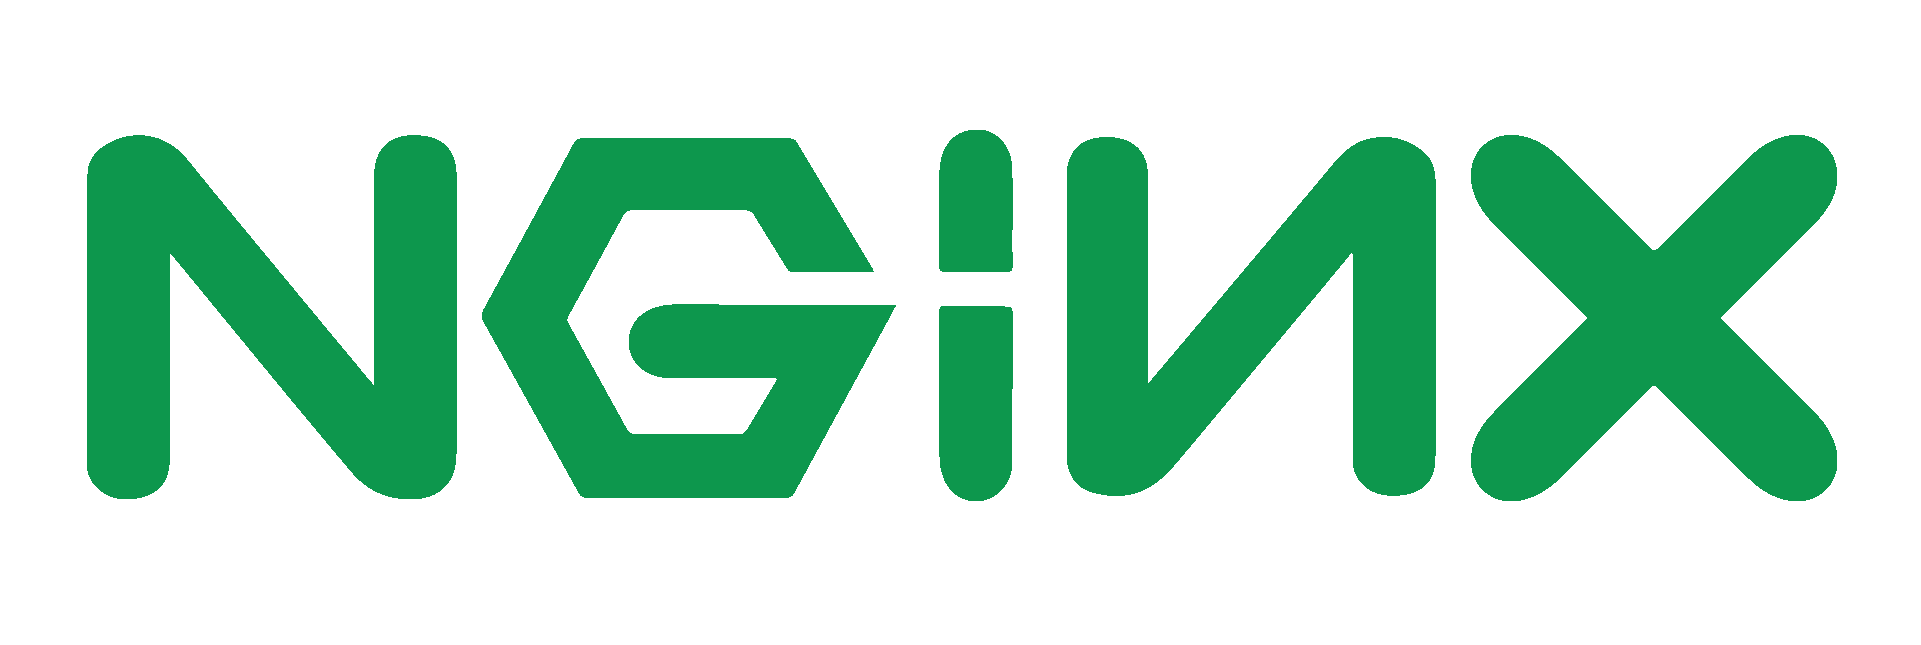 NGINX-logo-rgb-large.png